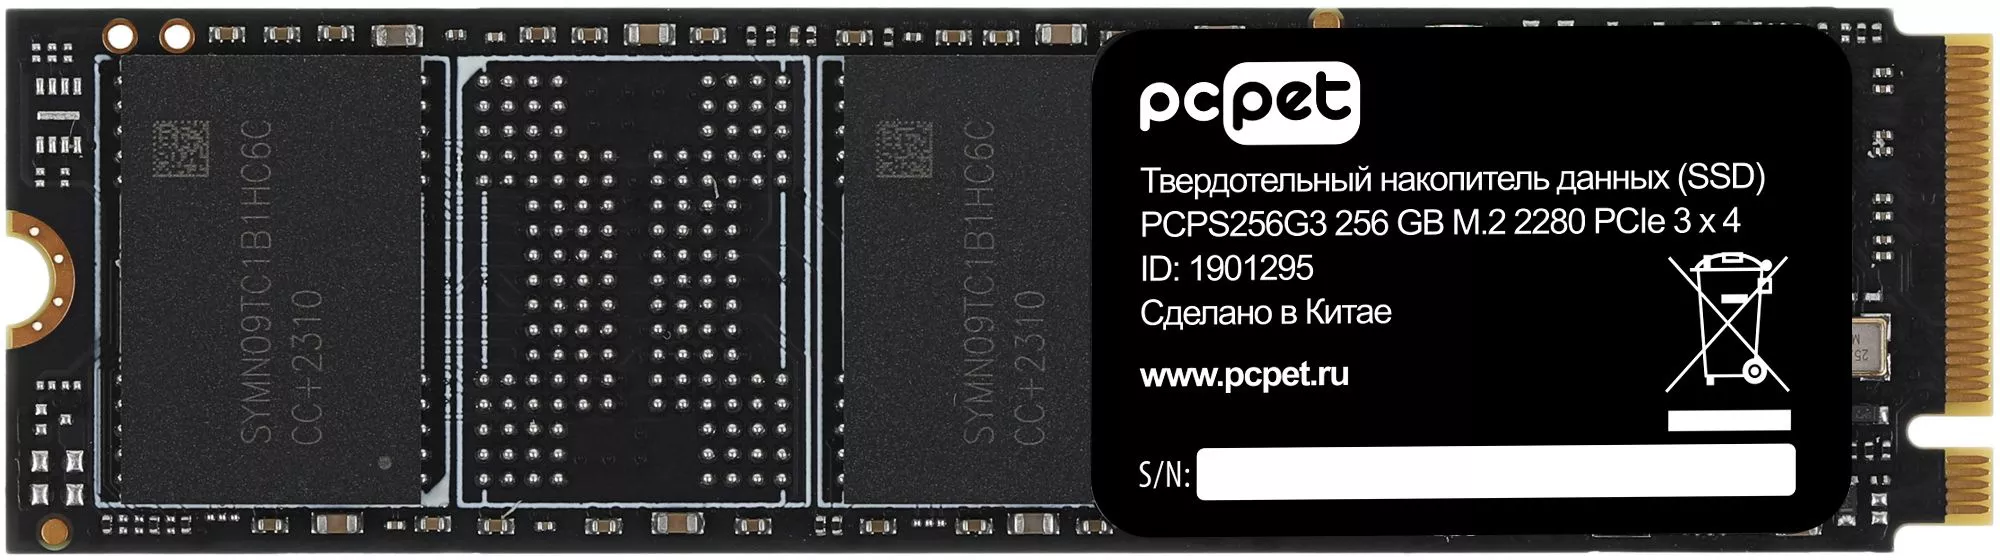 PC PET 256Gb PCPS256G3